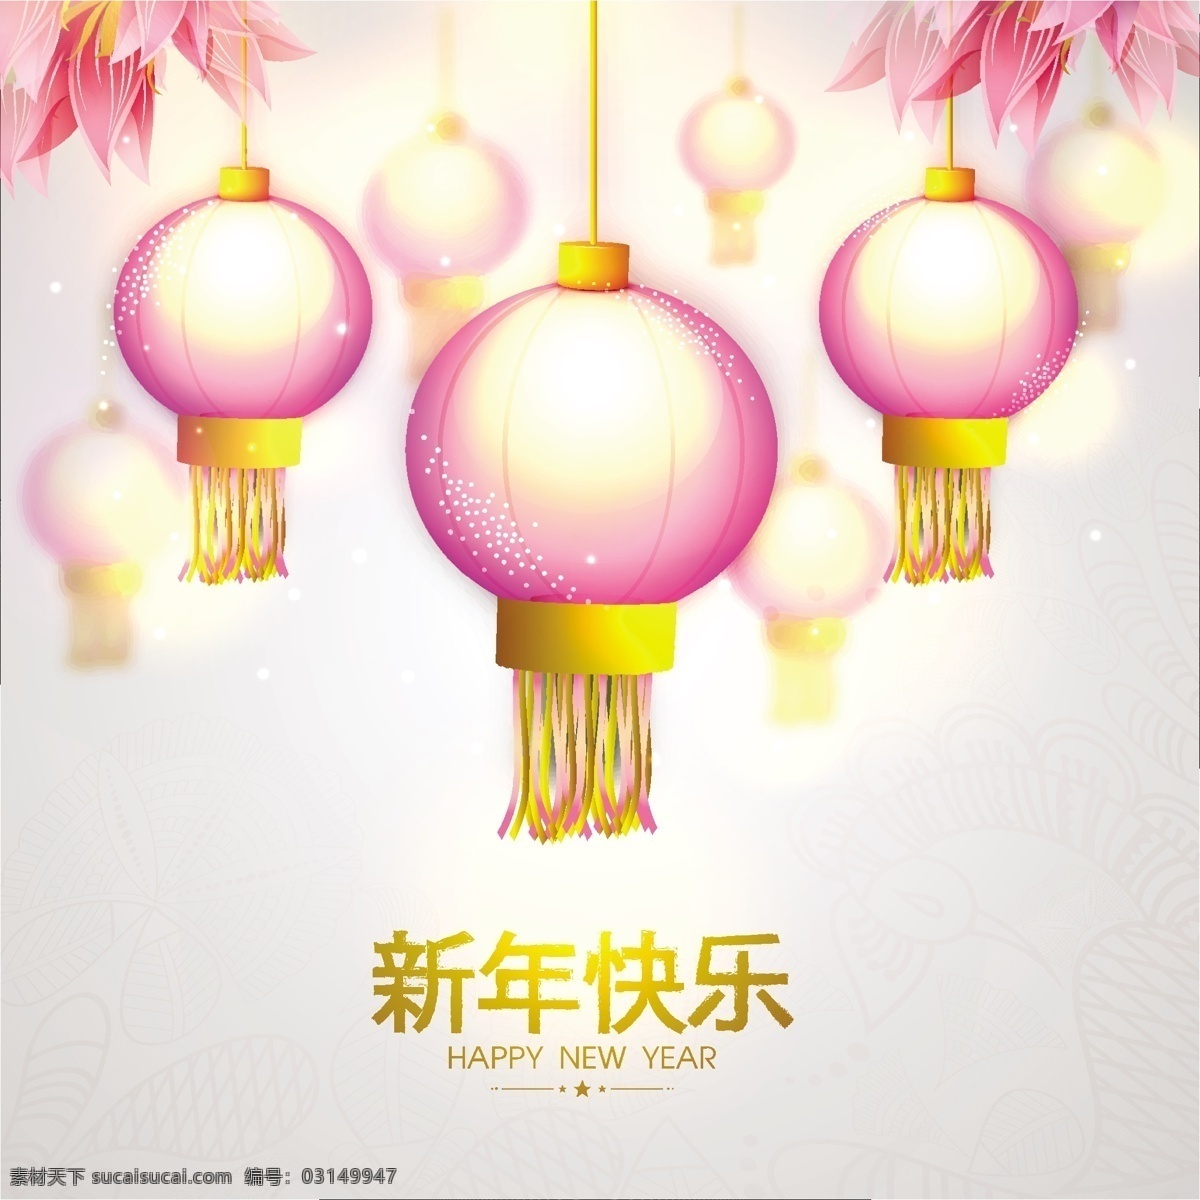 新年 灯笼 模板下载 新年灯笼 庆典 喜庆 贺岁 春节 节日素材 新年背景 白色